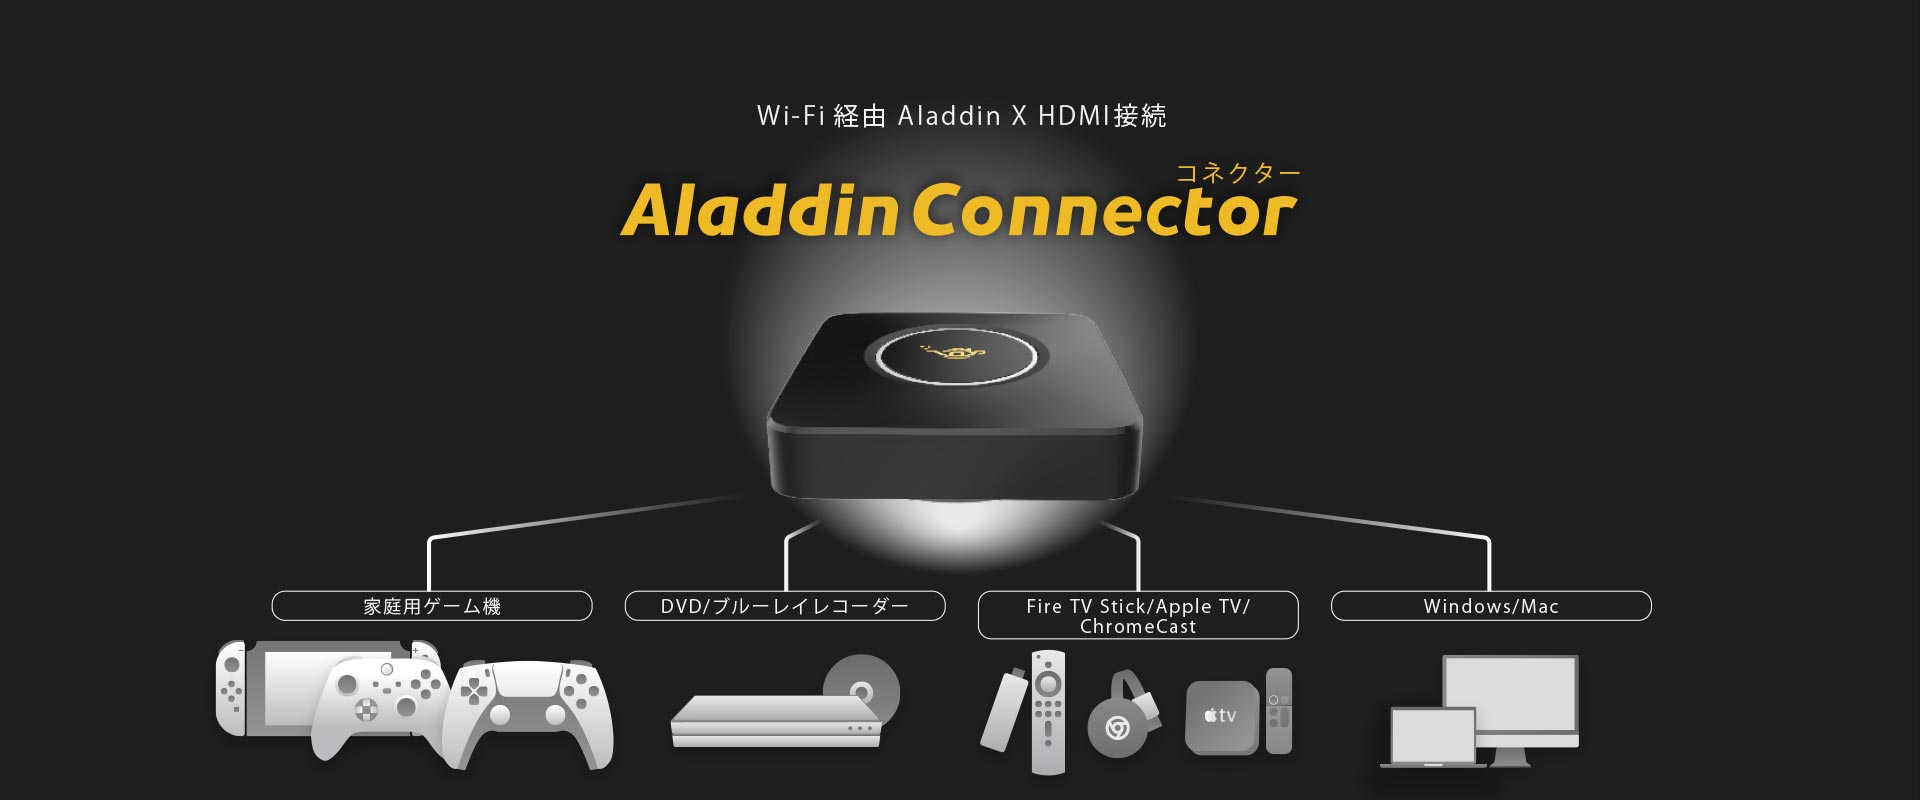 Aladdin connector 2  アラジン コネクター 2